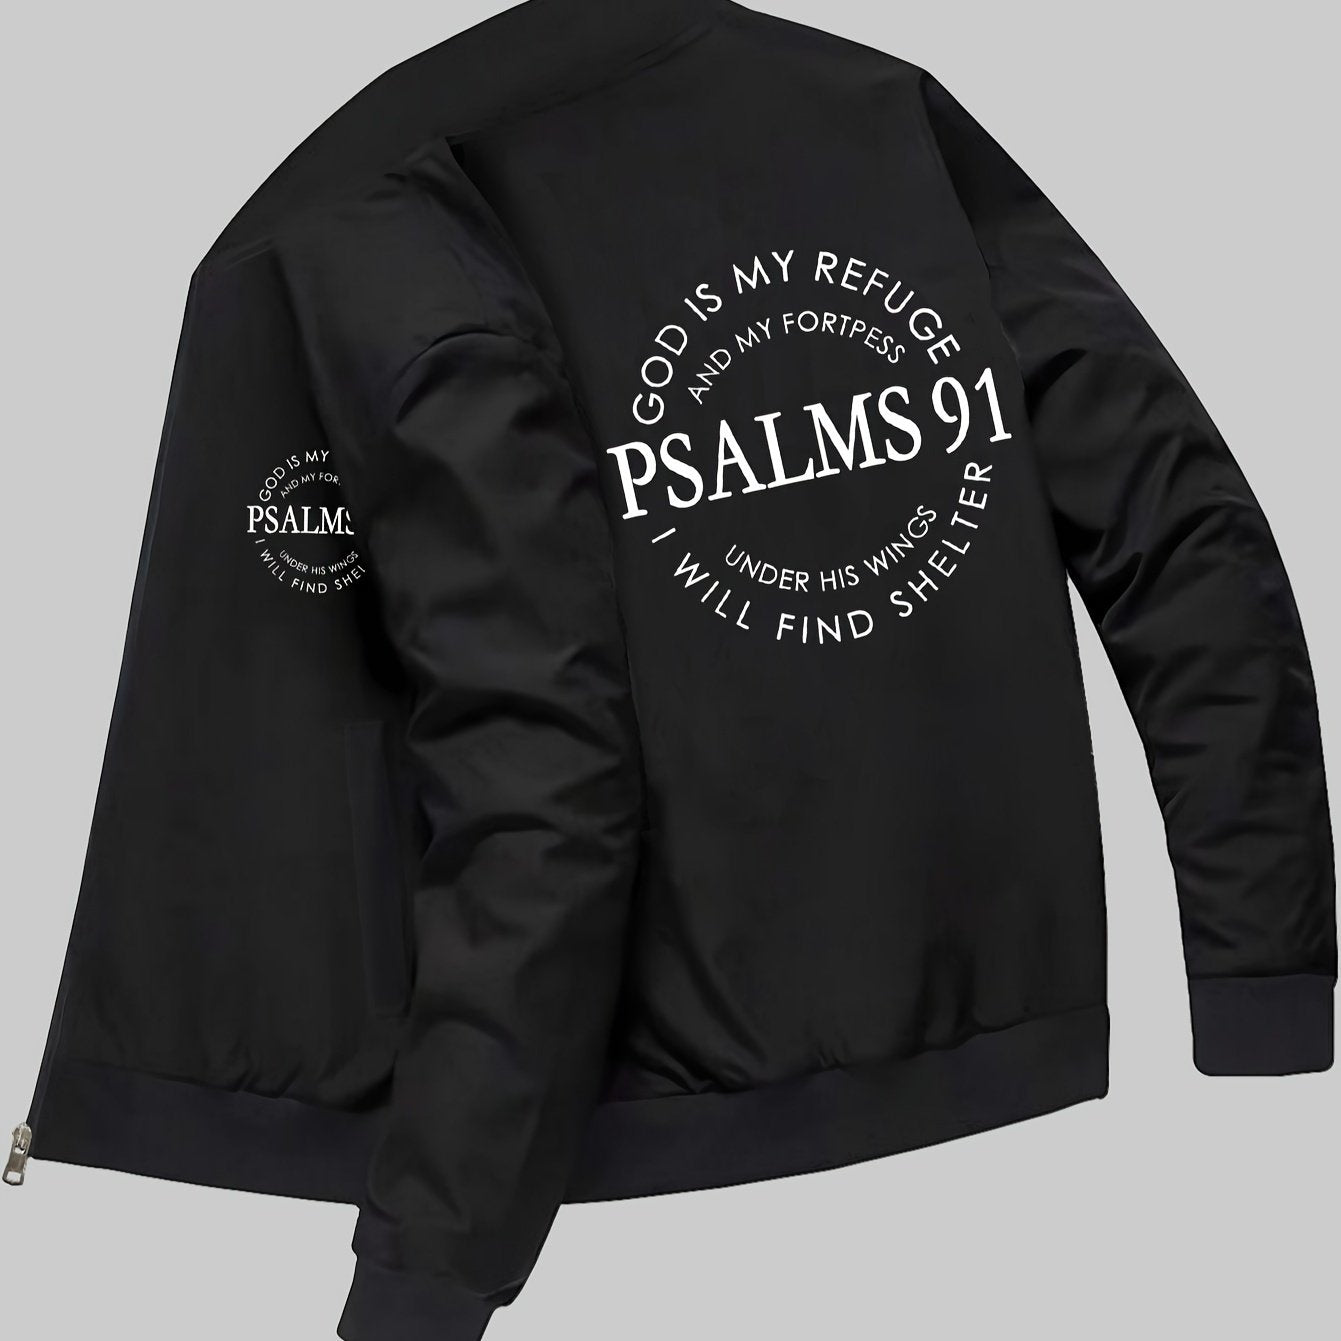 Psalms 91 Men's Christian Jacket claimedbygoddesigns